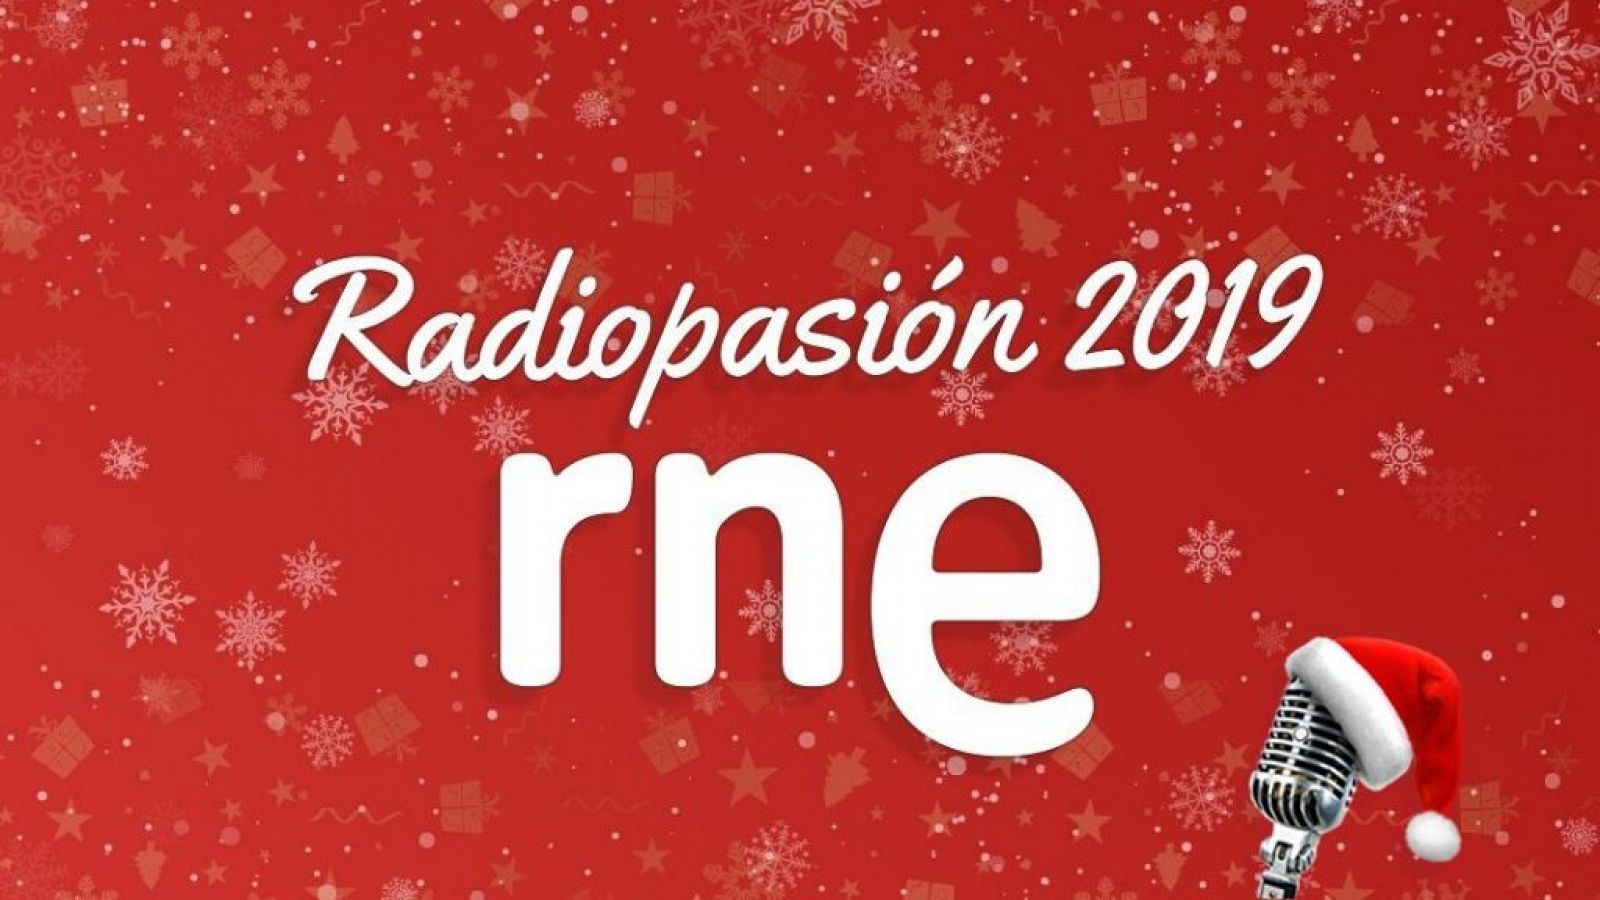 Radiopasión 2019 - ¡La radio dando el cante! - Ver ahora